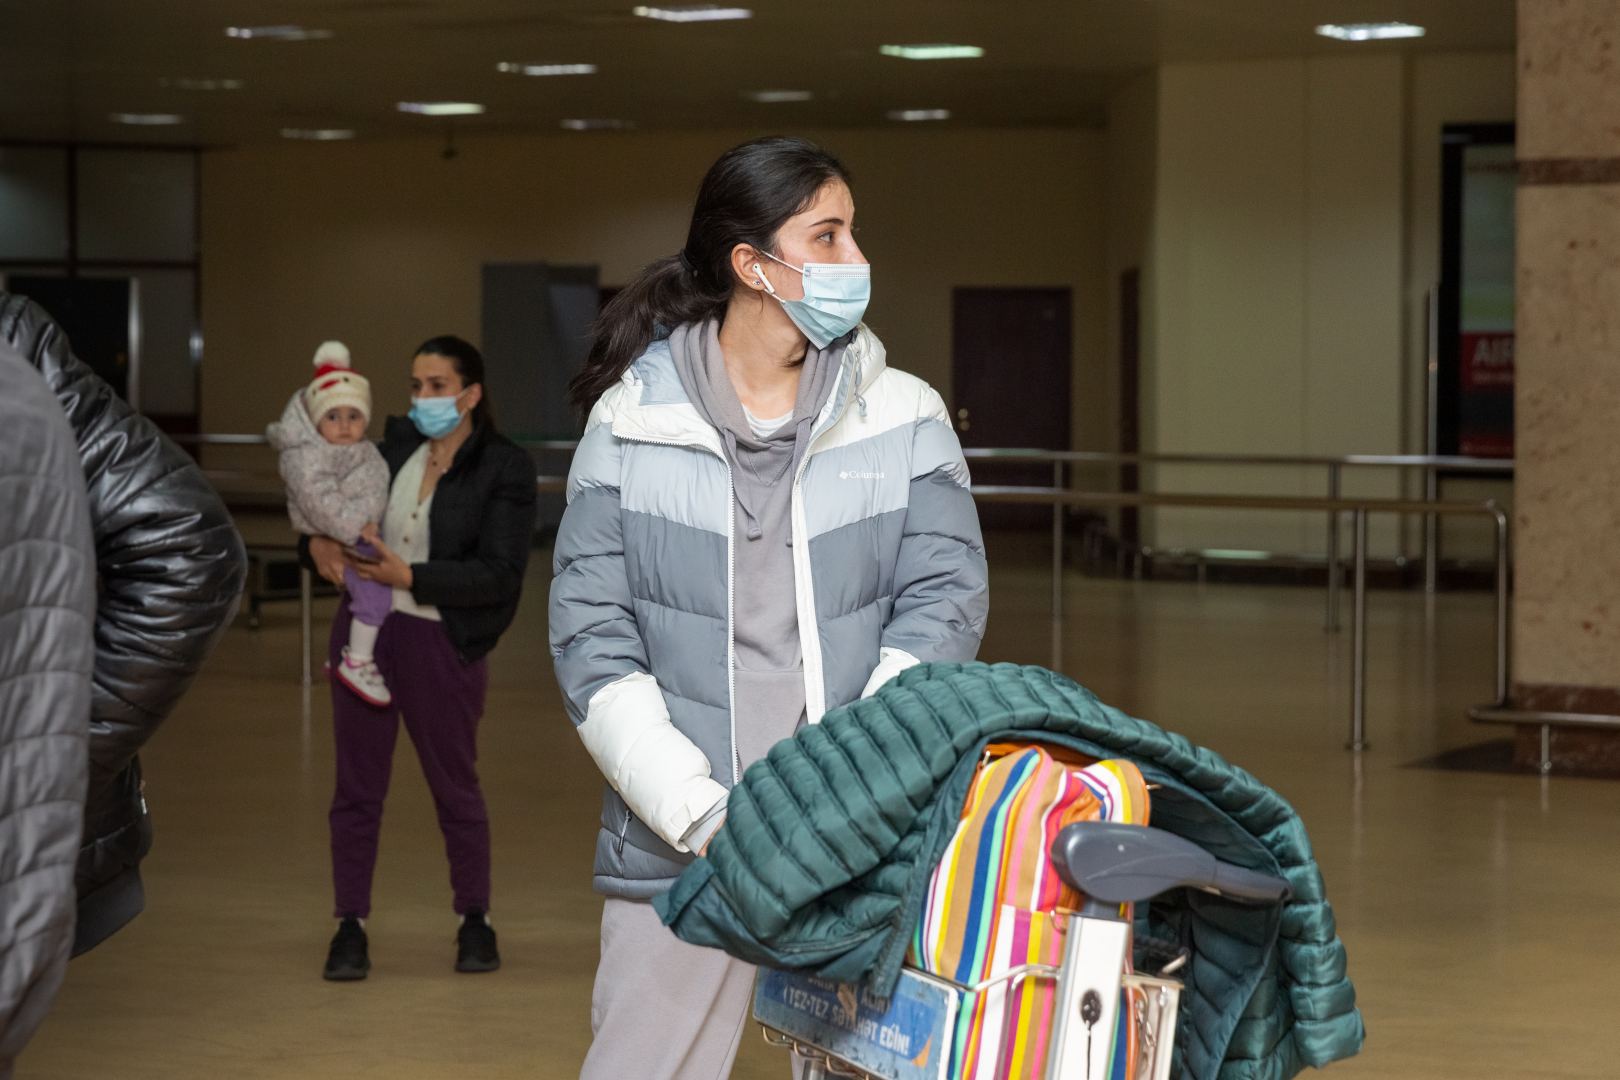 Еще одна группа эвакуированных из Украины граждан Азербайджана вернулась в Баку (ФОТО)